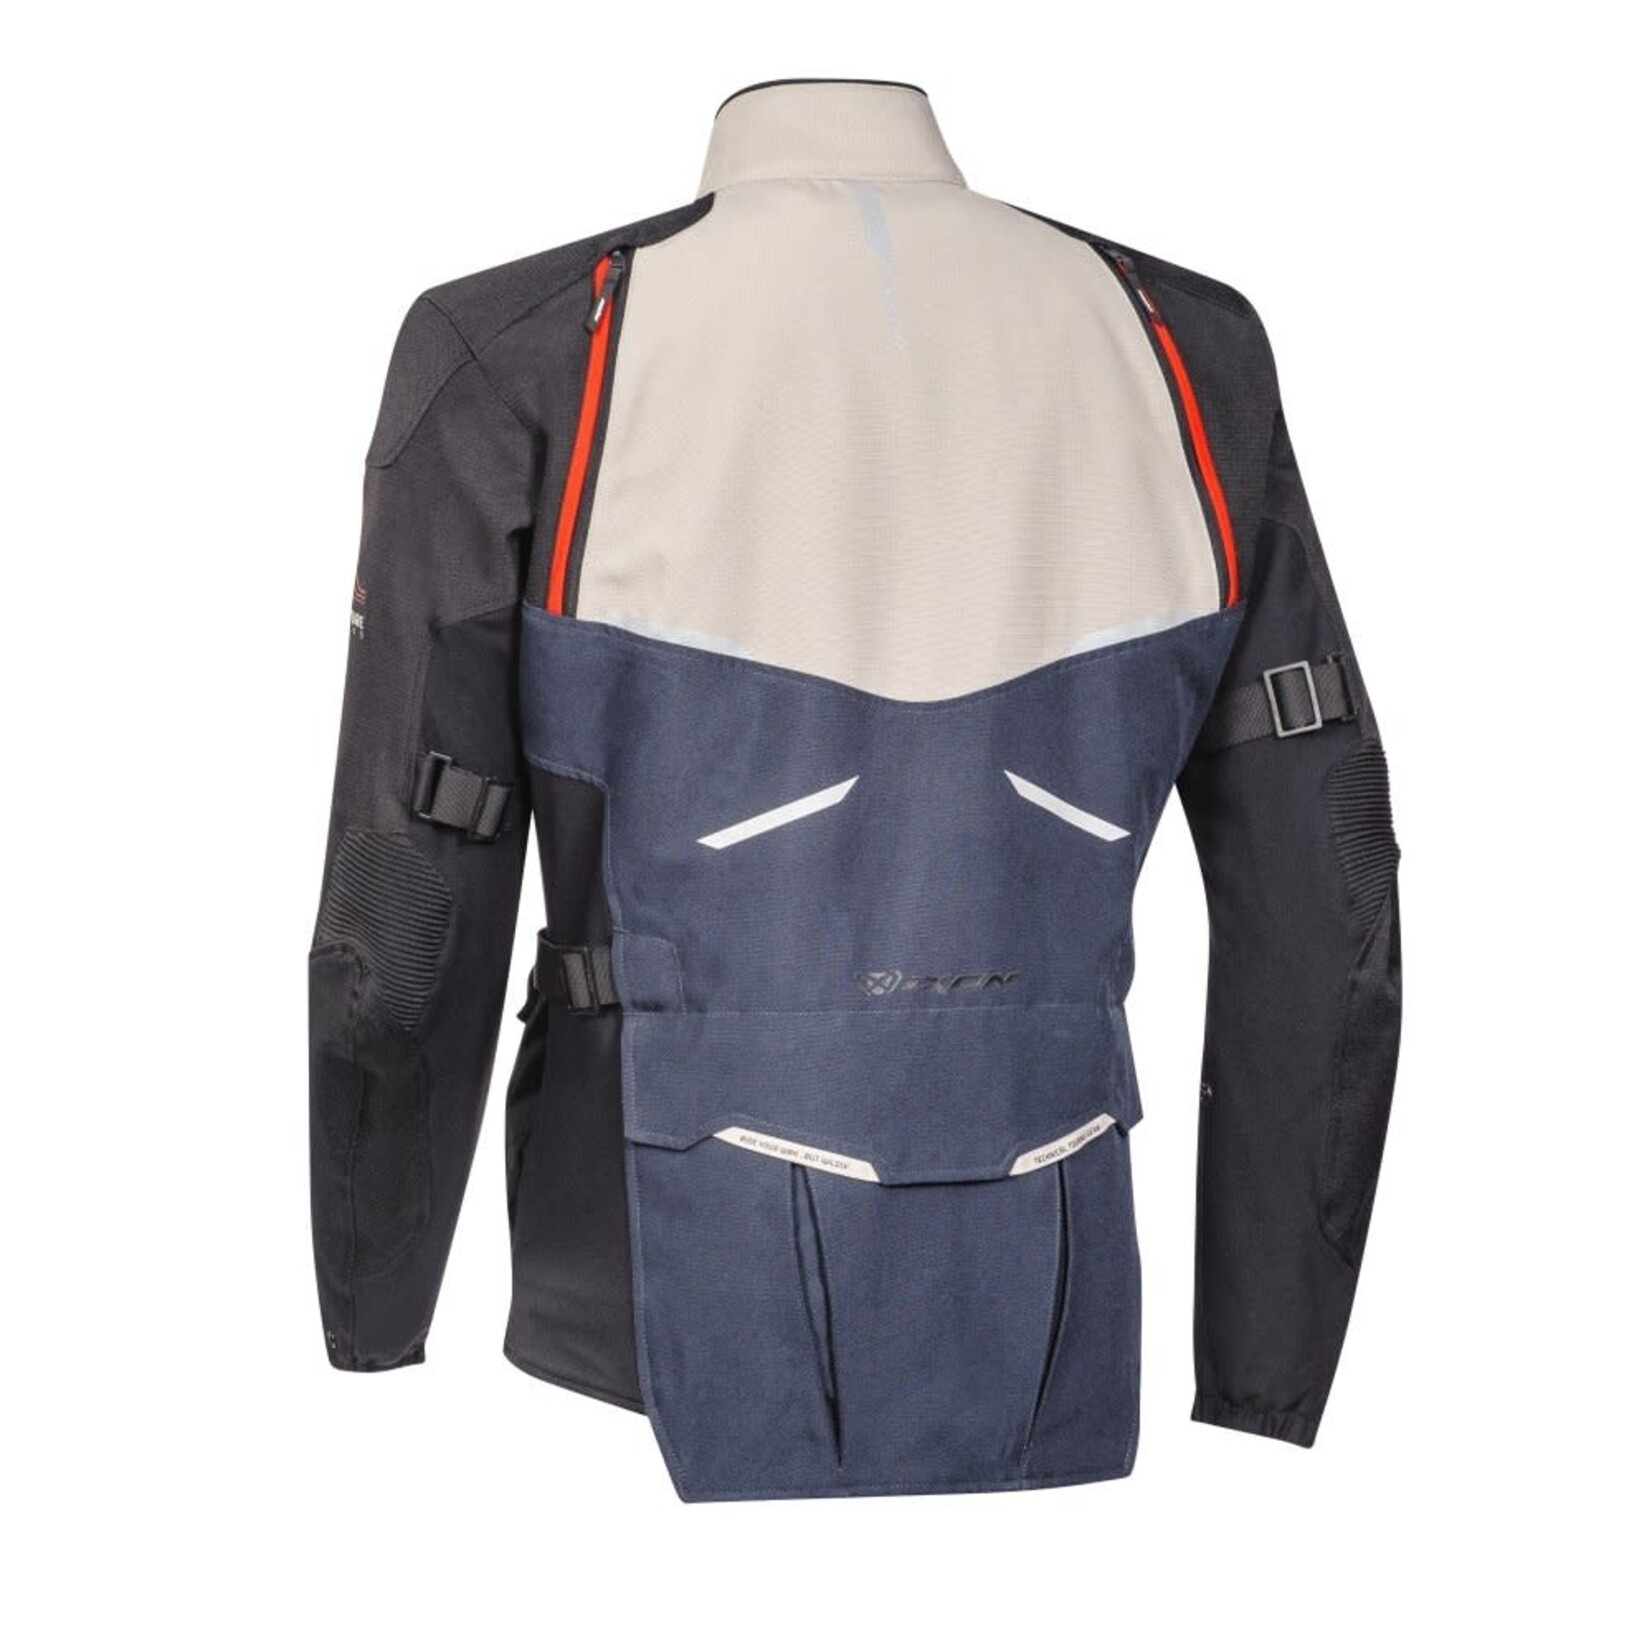 Ixon Ixon jacket textile eddas grege/navy/black